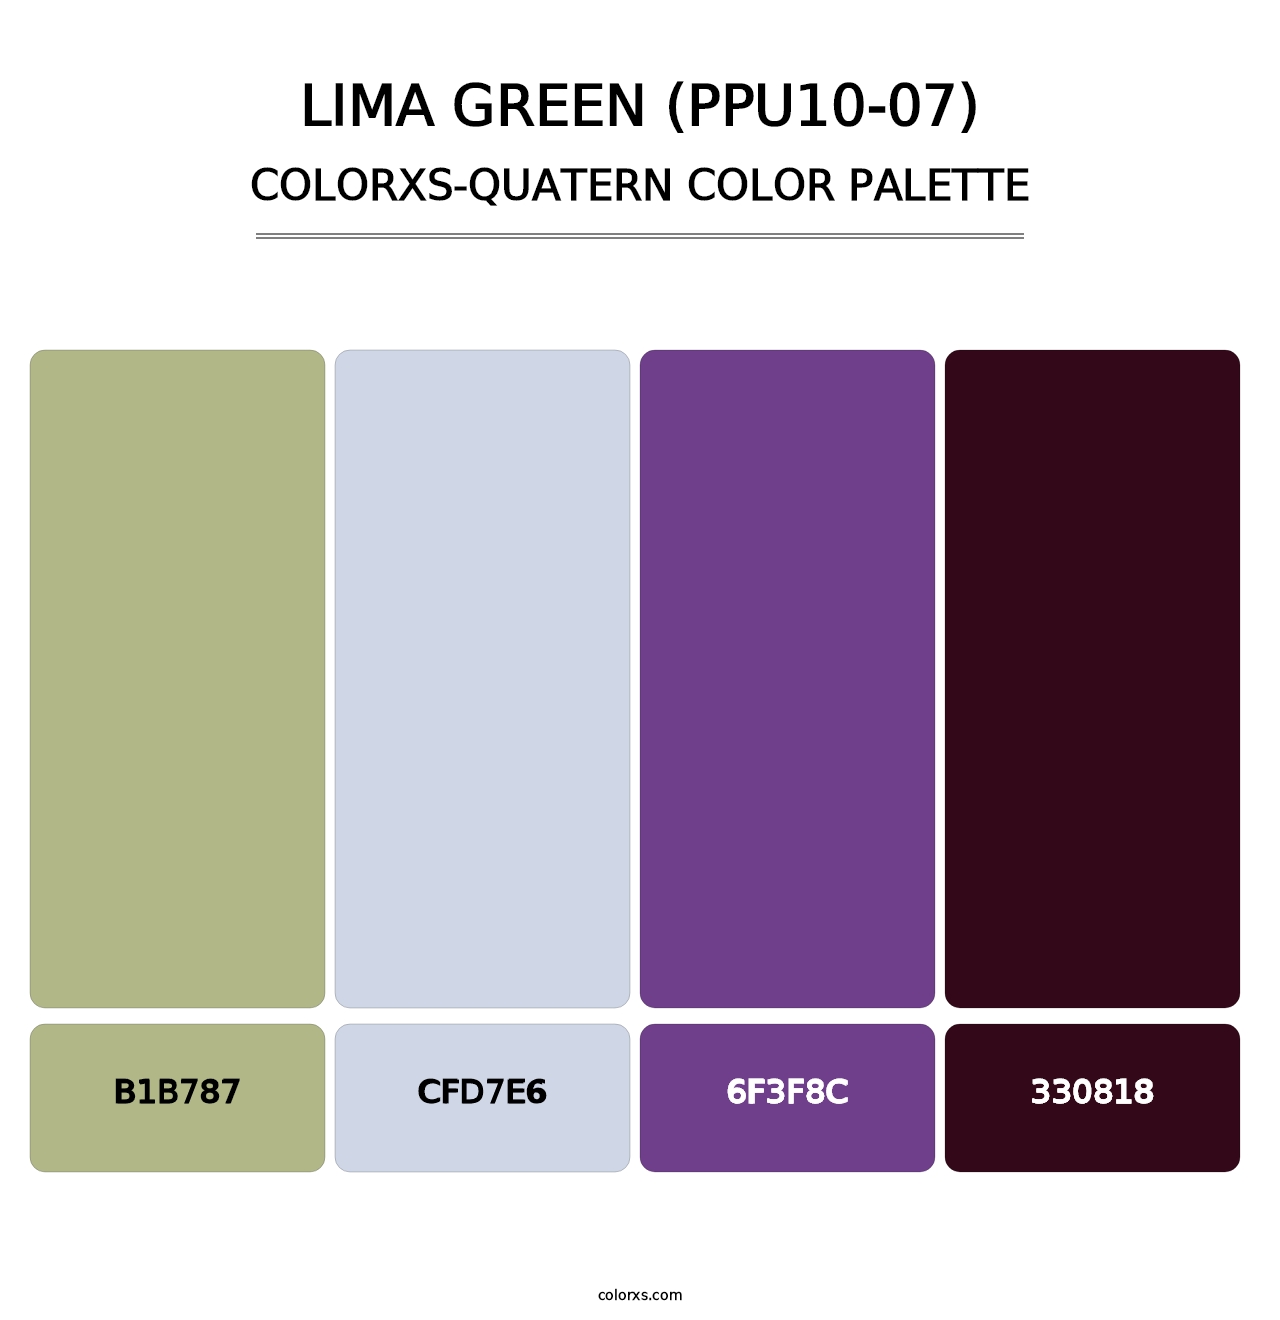 Lima Green (PPU10-07) - Colorxs Quatern Palette